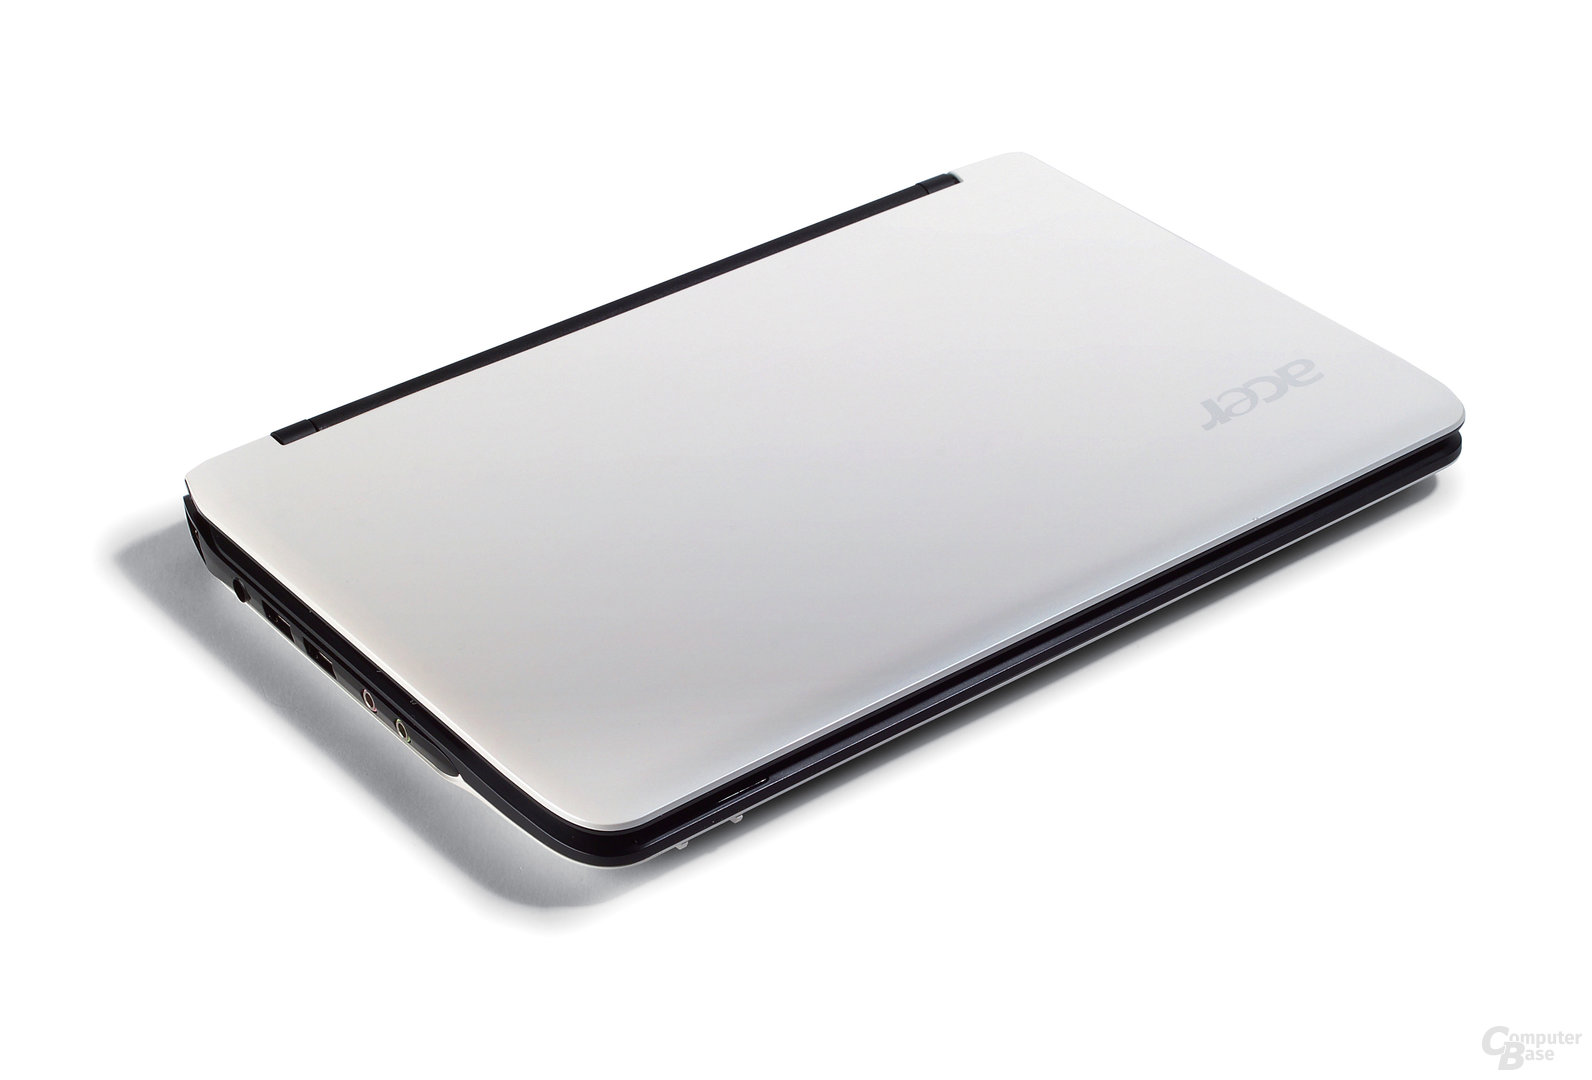 Acer Aspire one 751 in weiß